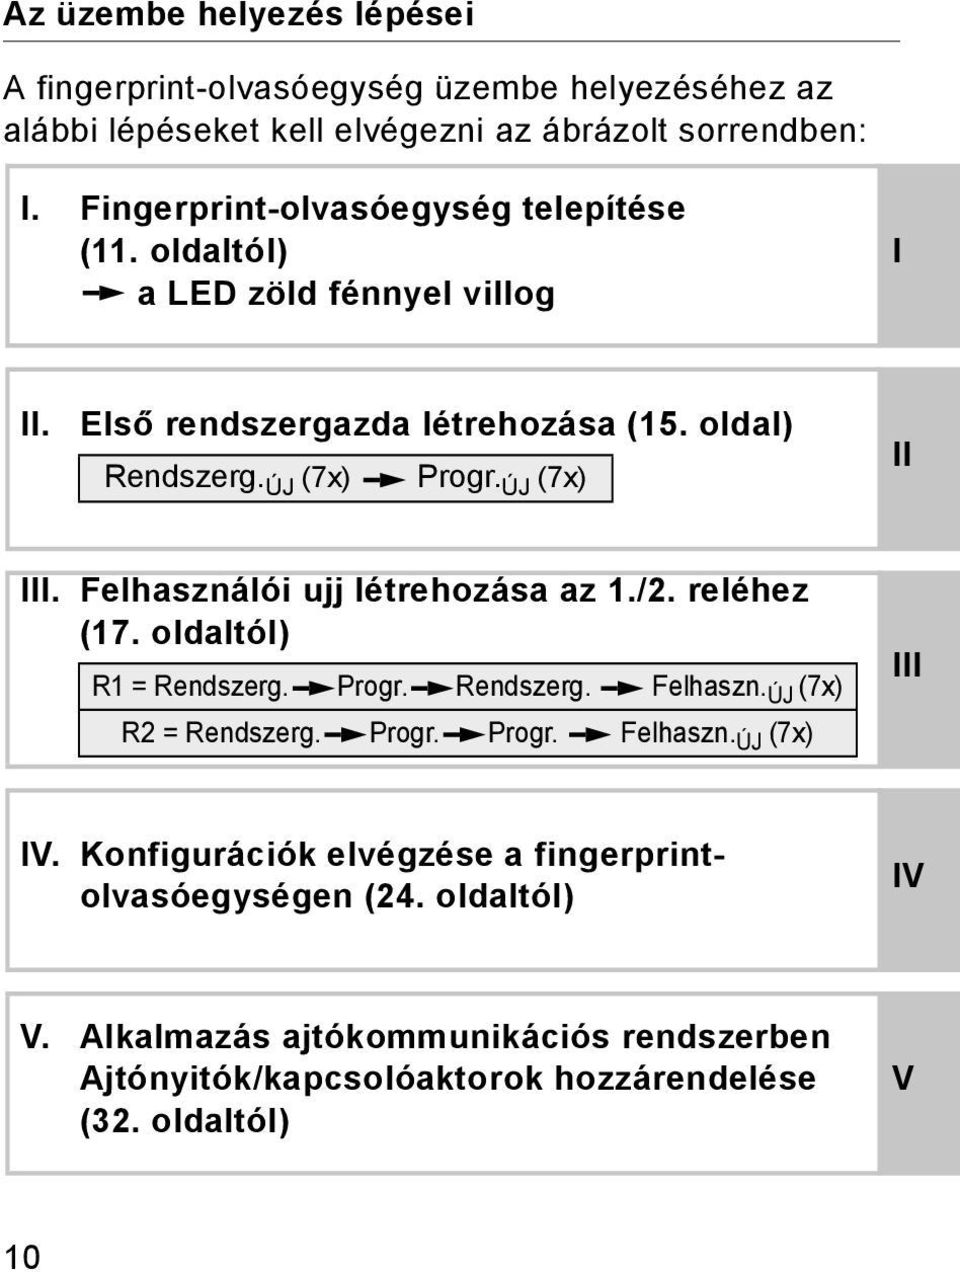 ÚJ (7x) II III. Felhasználói ujj létrehozása az 1./. reléhez (17. oldaltól) R1 = Rendszerg. Progr. Rendszerg. Felhaszn. ÚJ (7x) R = Rendszerg. Progr. Progr. Felhaszn. ÚJ (7x) III IV.